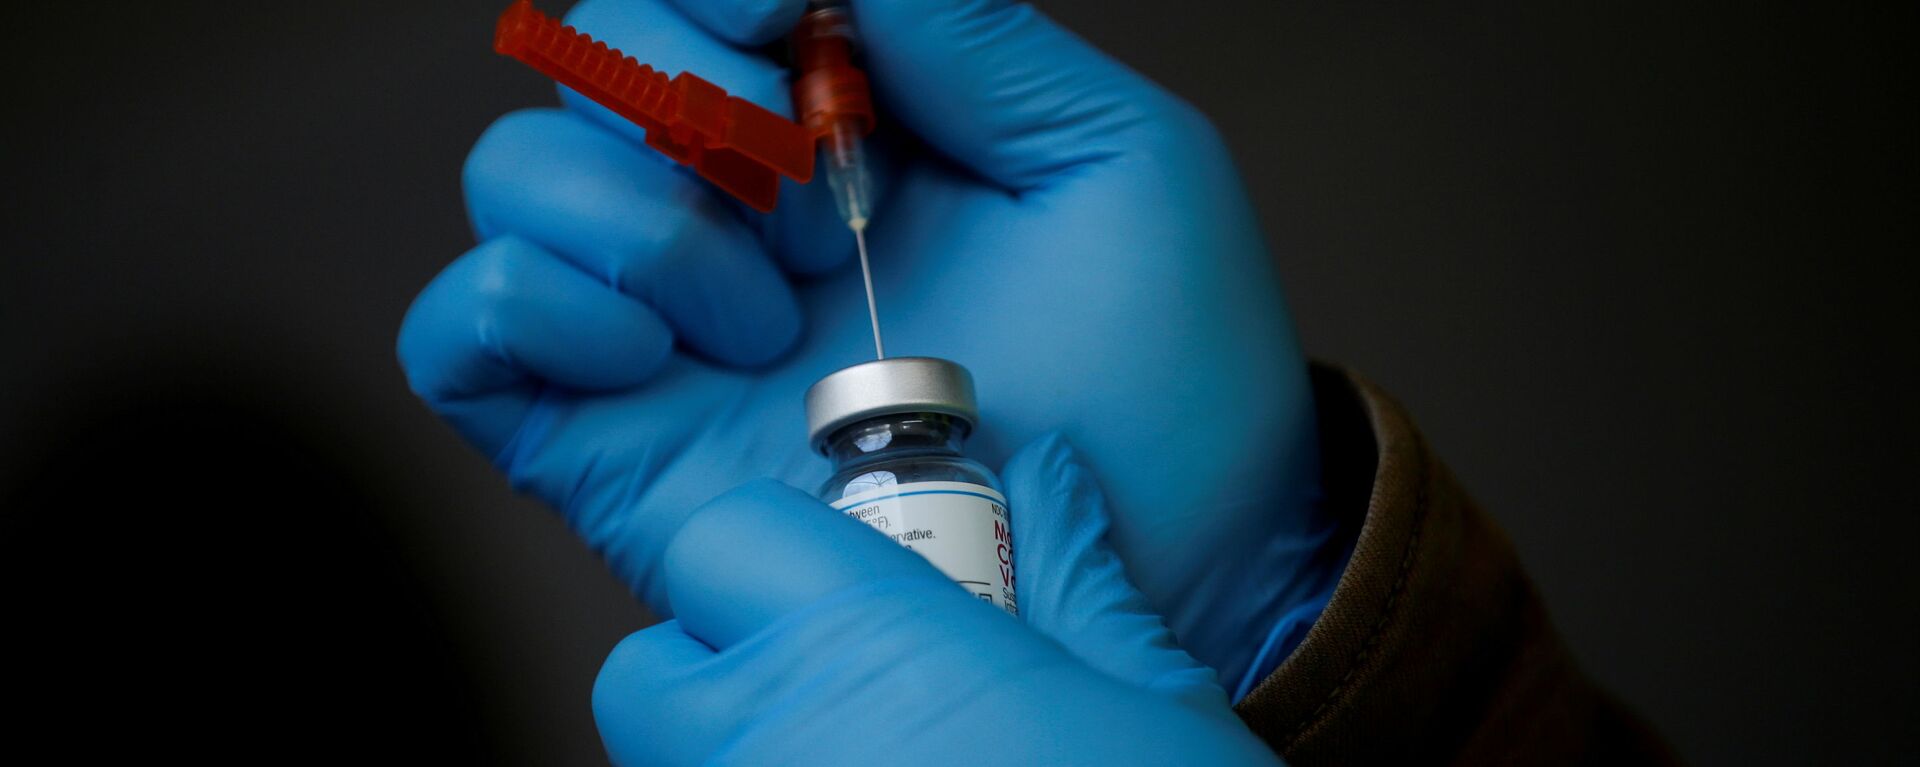 Un profesional de la salud extrae una dosis de una vacuna contra el COVID-19 de un vial (archivo) - Sputnik Mundo, 1920, 01.02.2021